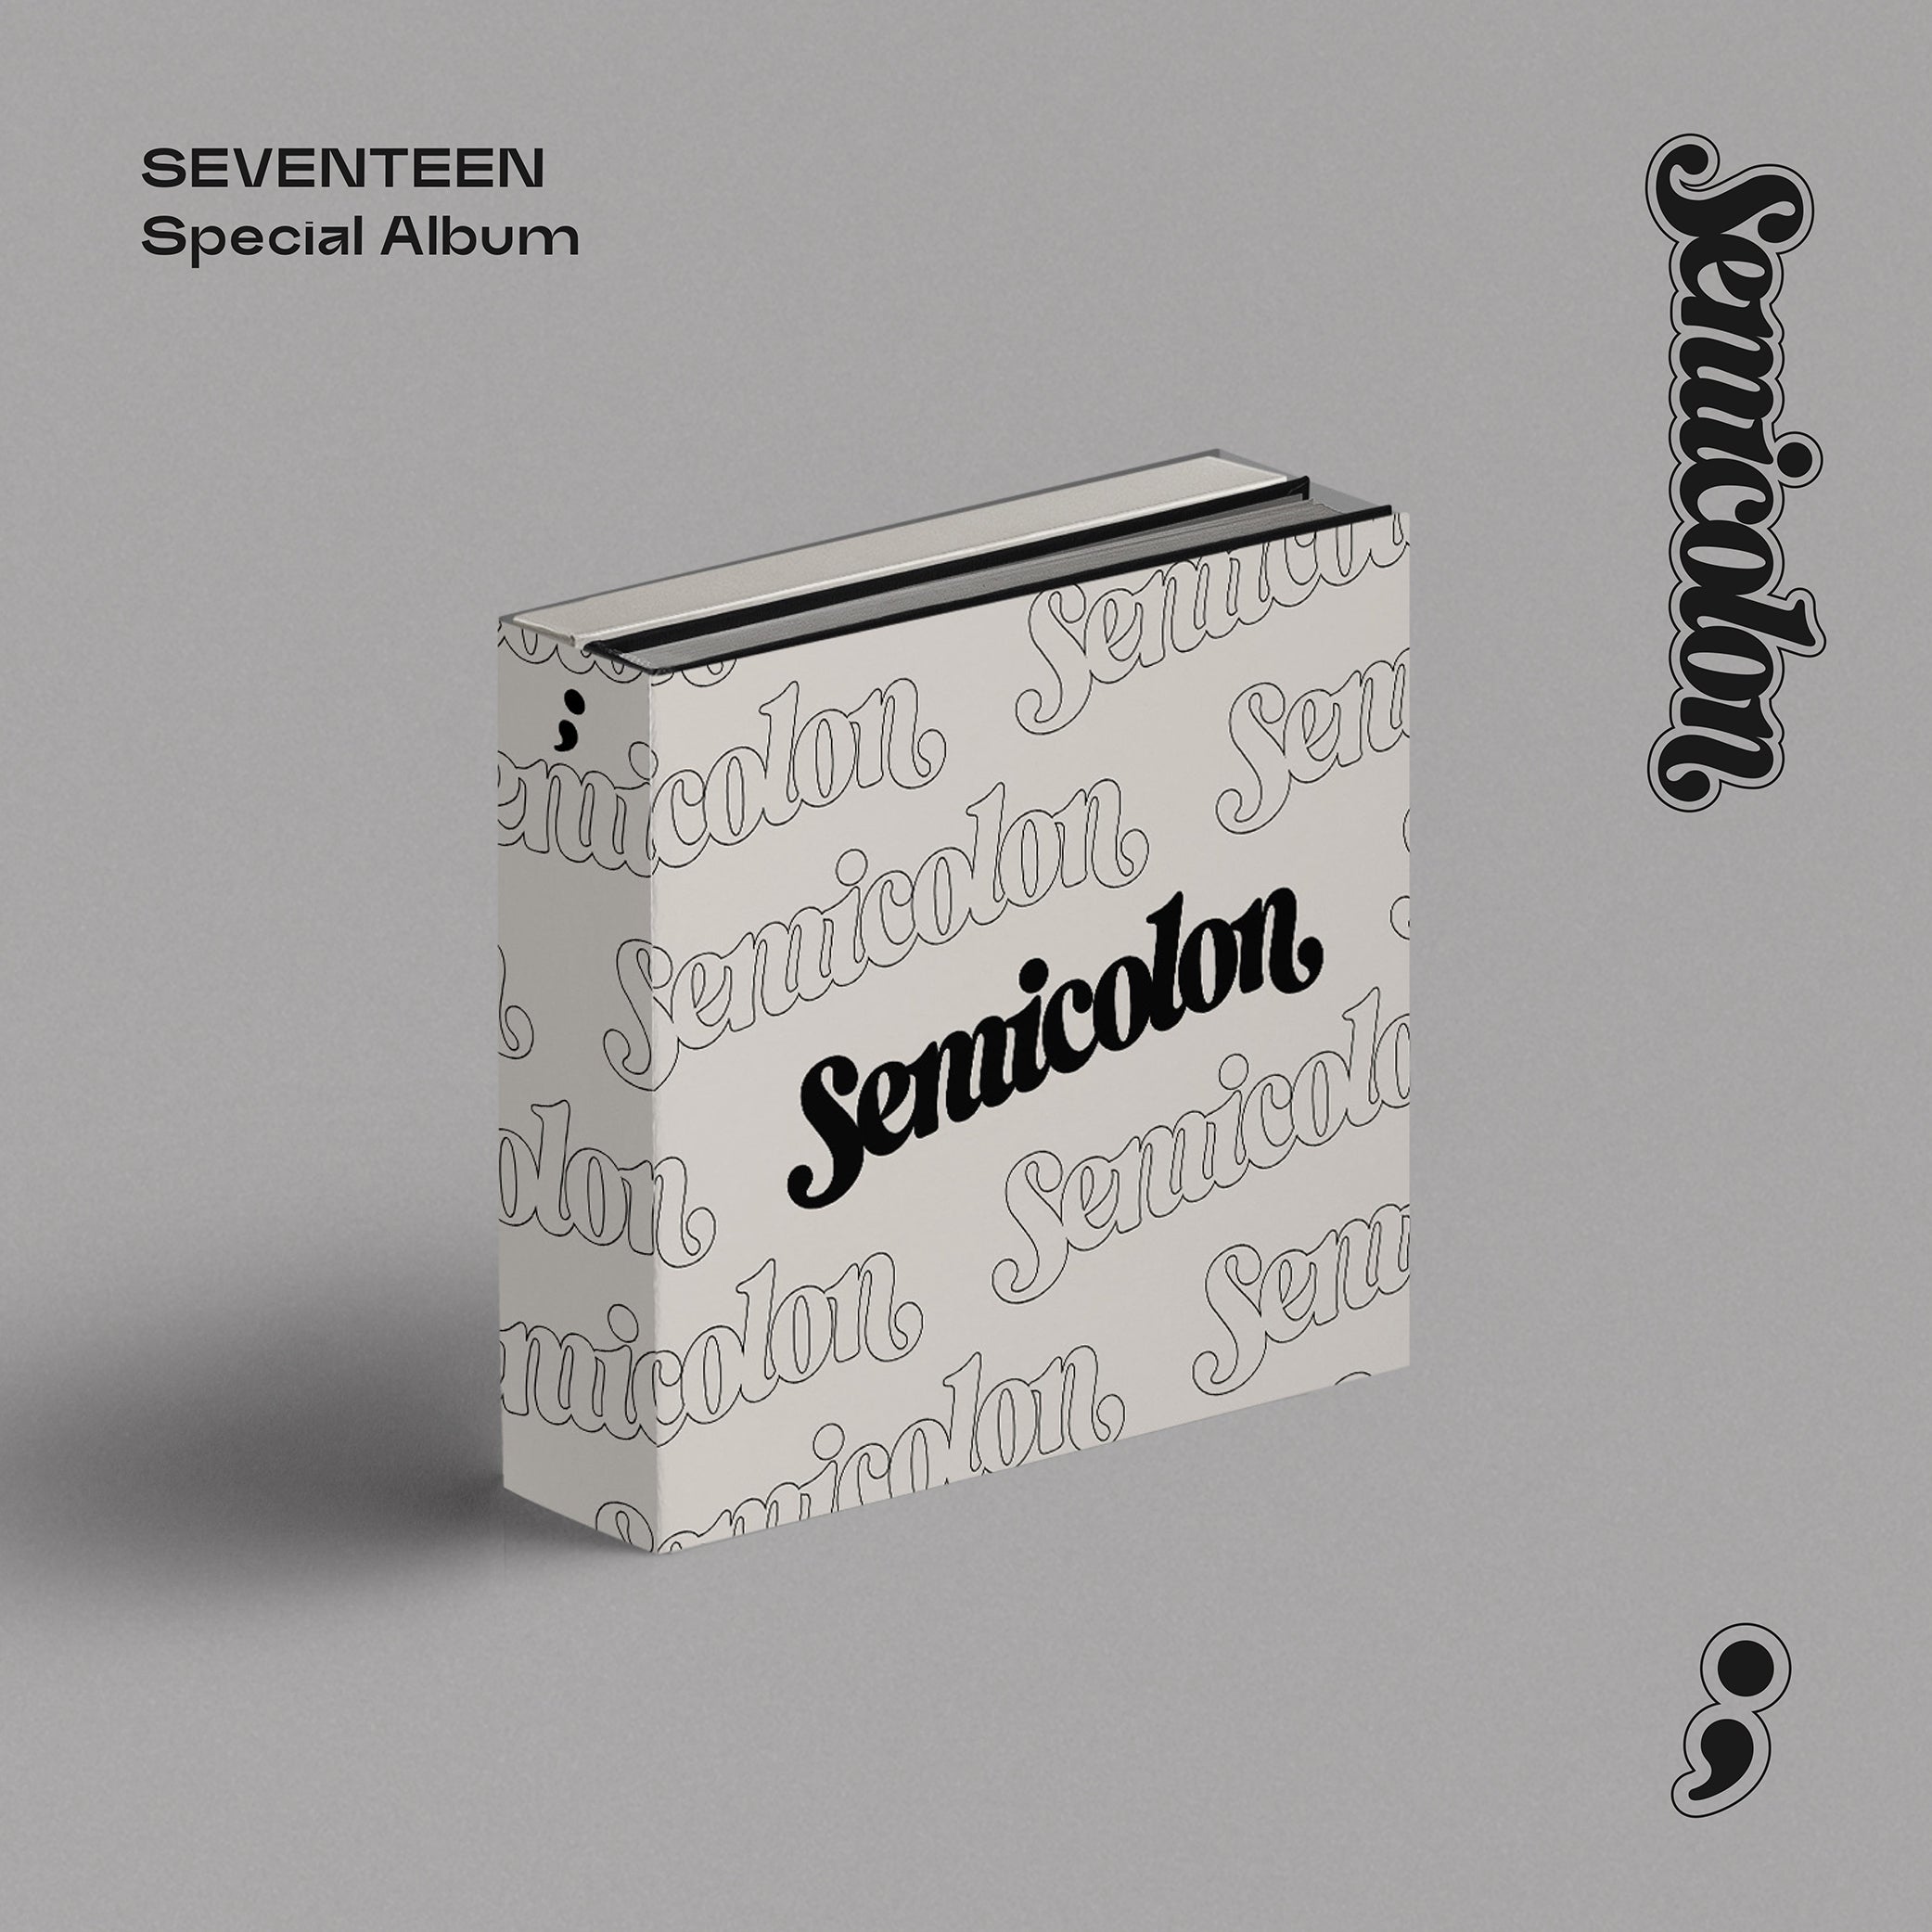 SEVENTEEN Special Album Semicolon